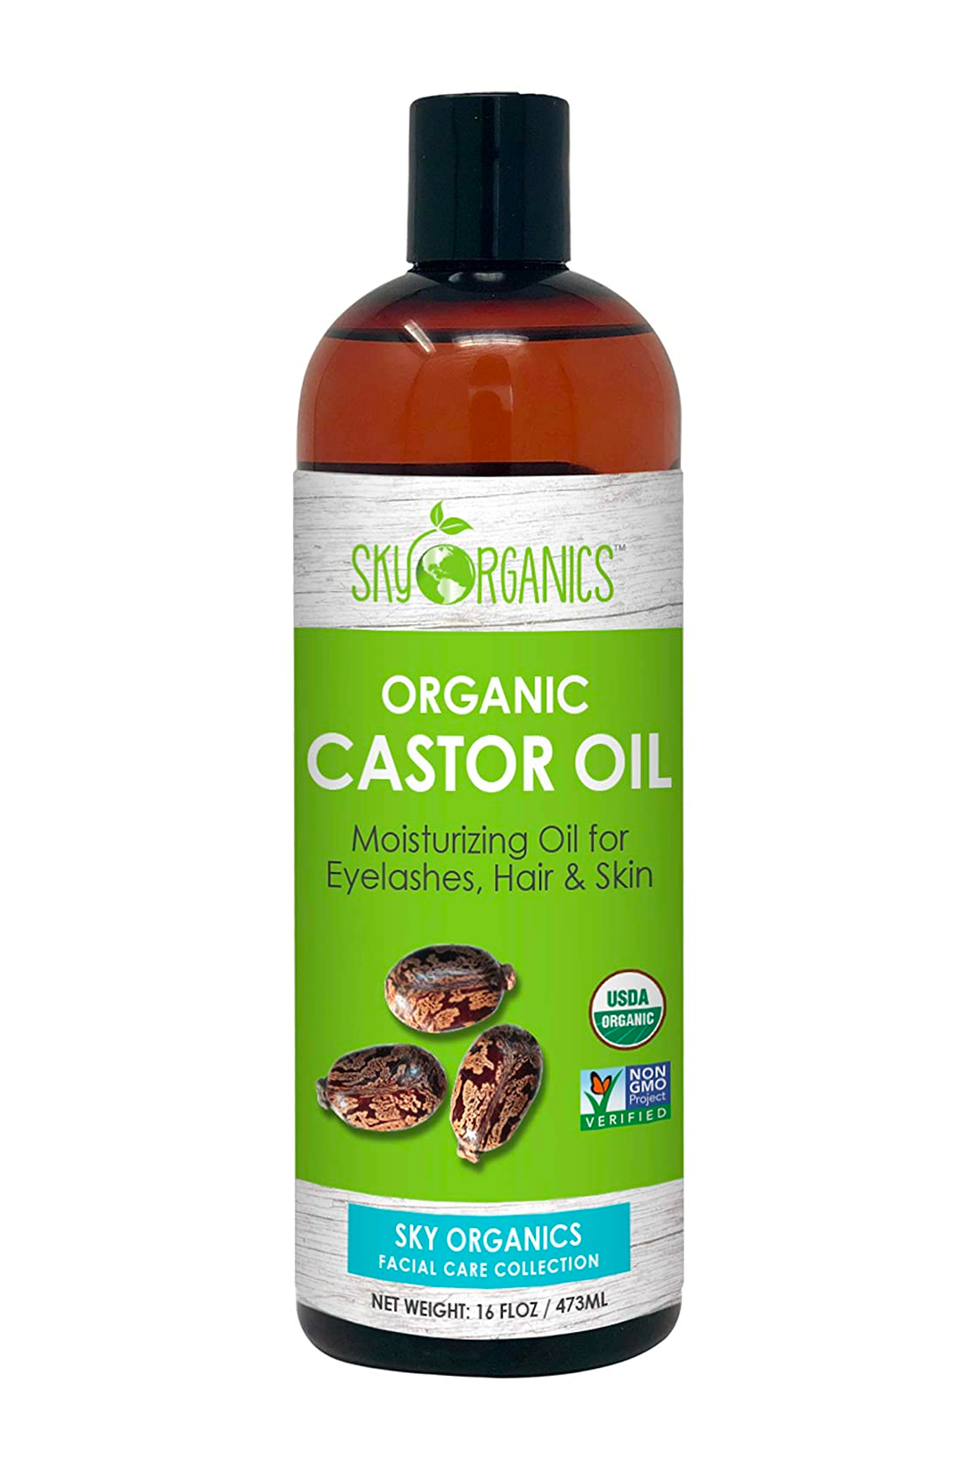 Sky Organics Organic Castor Oil for Eyelashes, Hair, & Skin